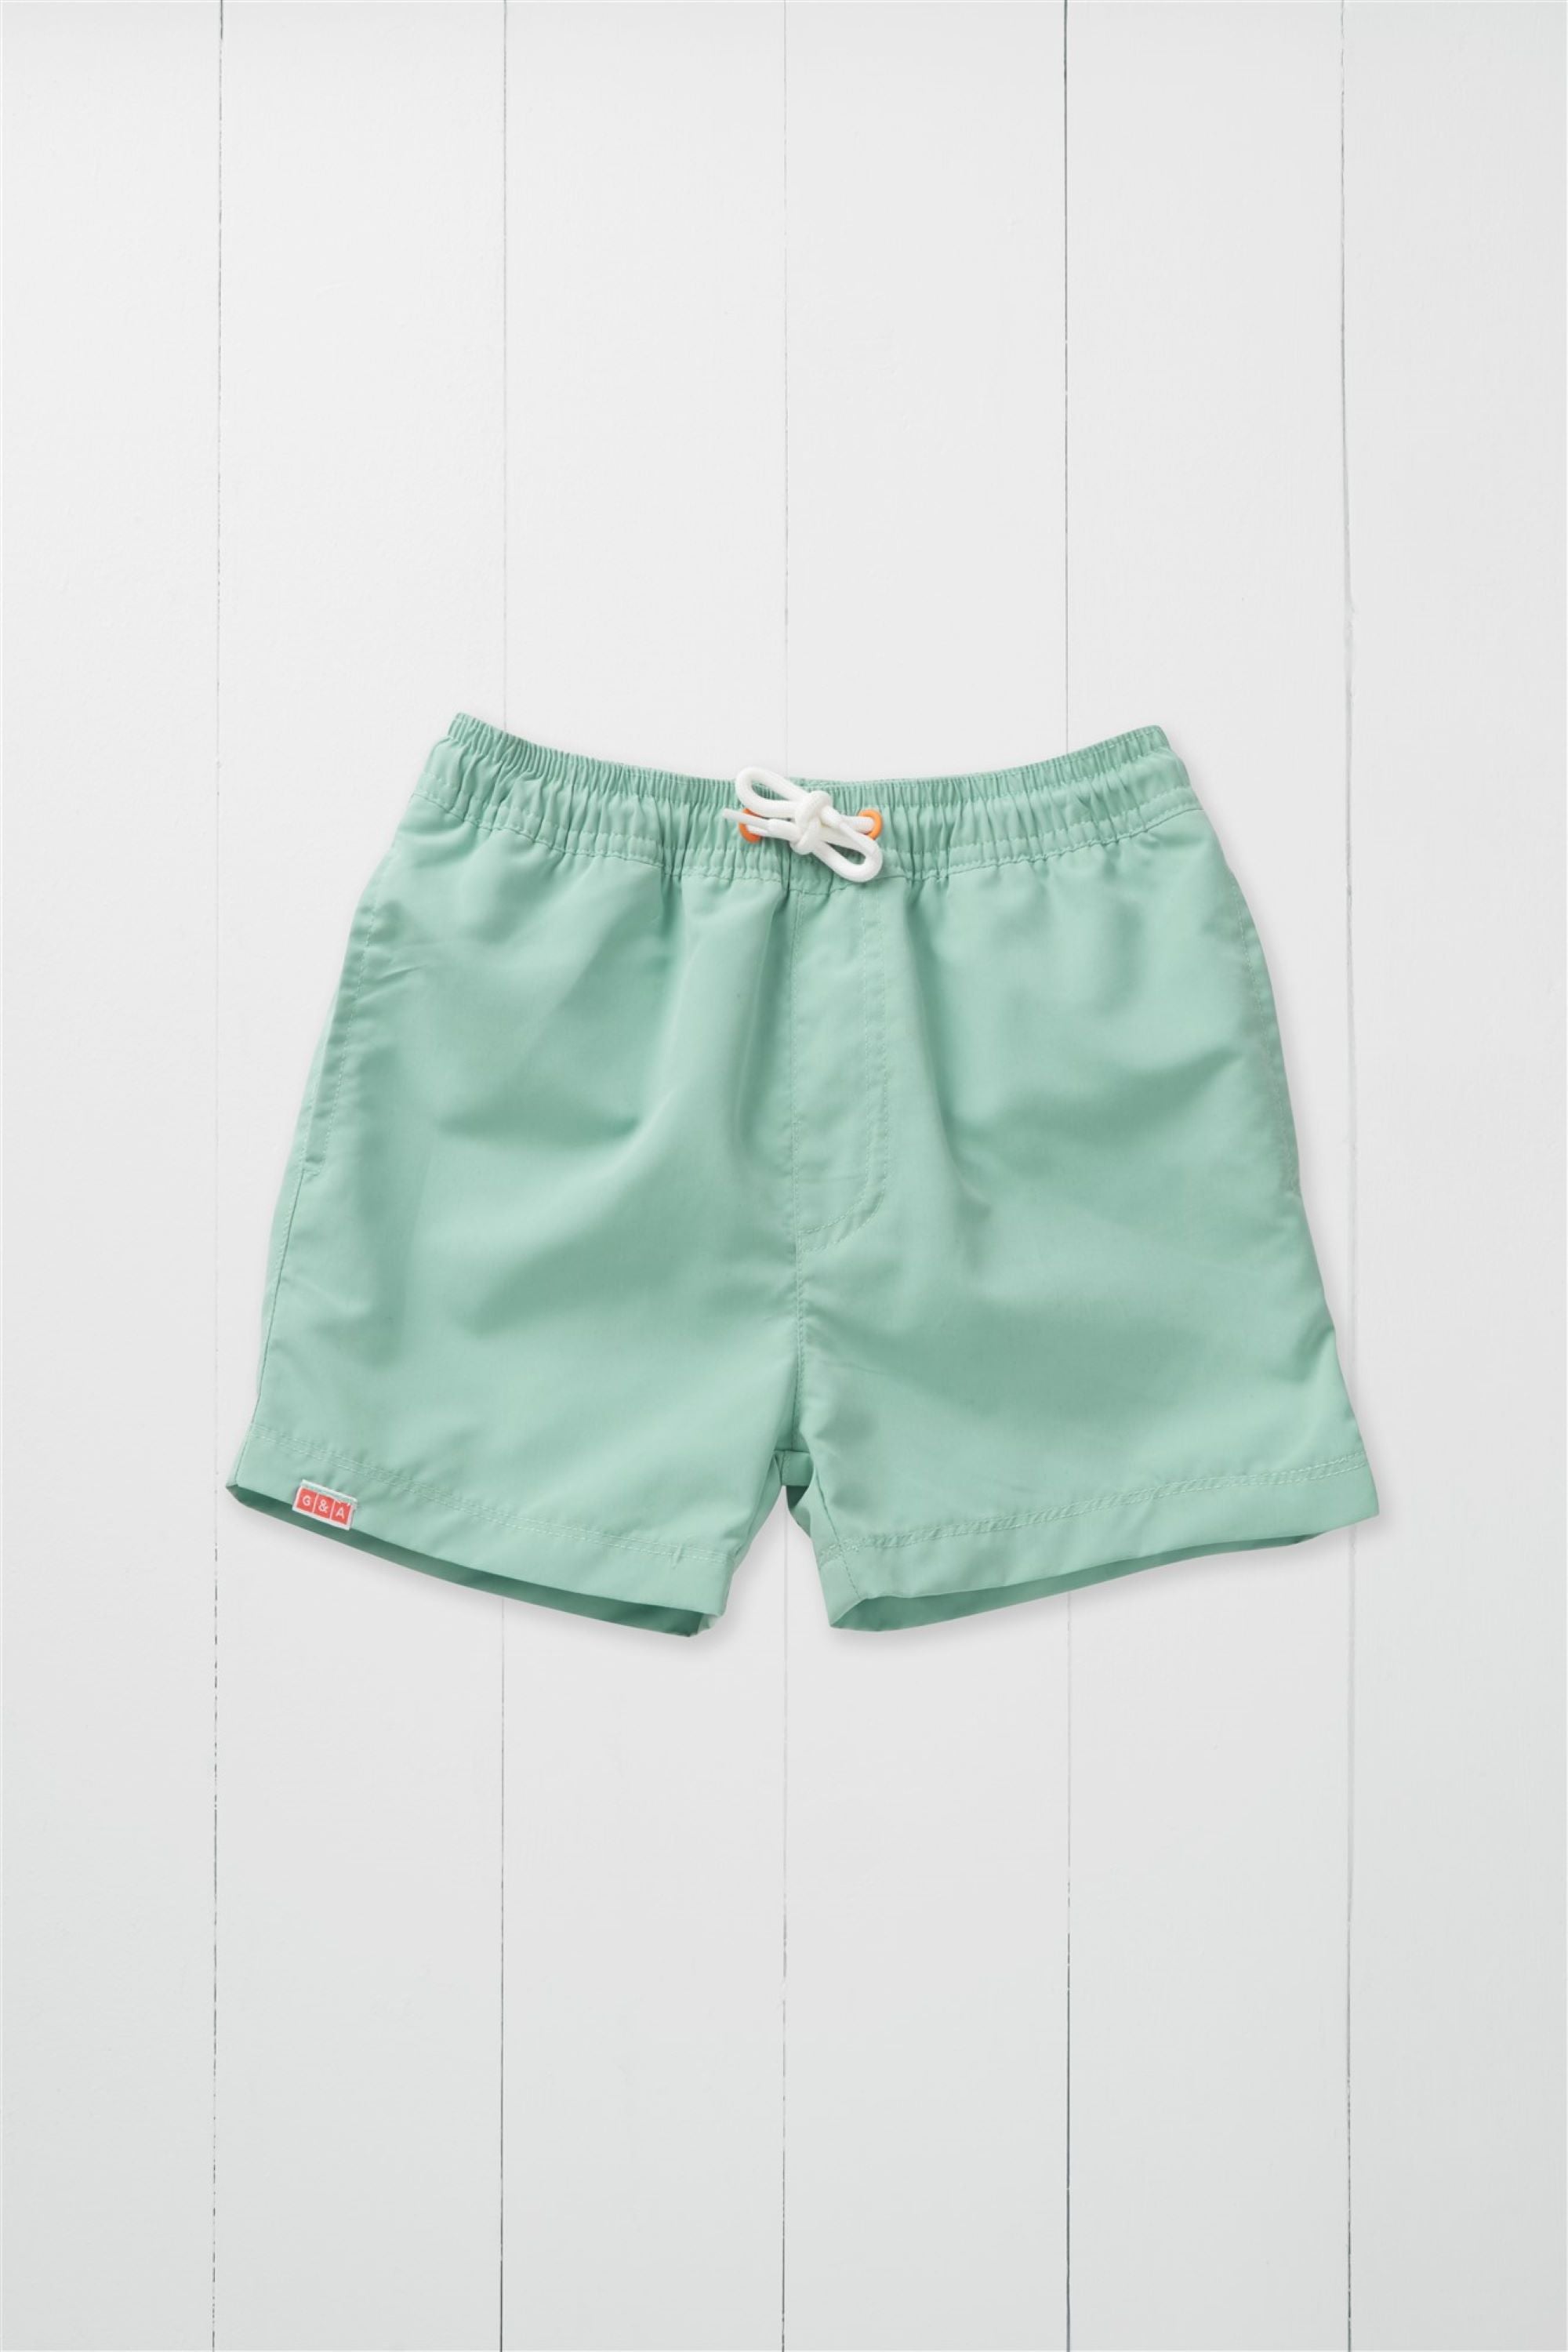 Pistachio Swim Shorts